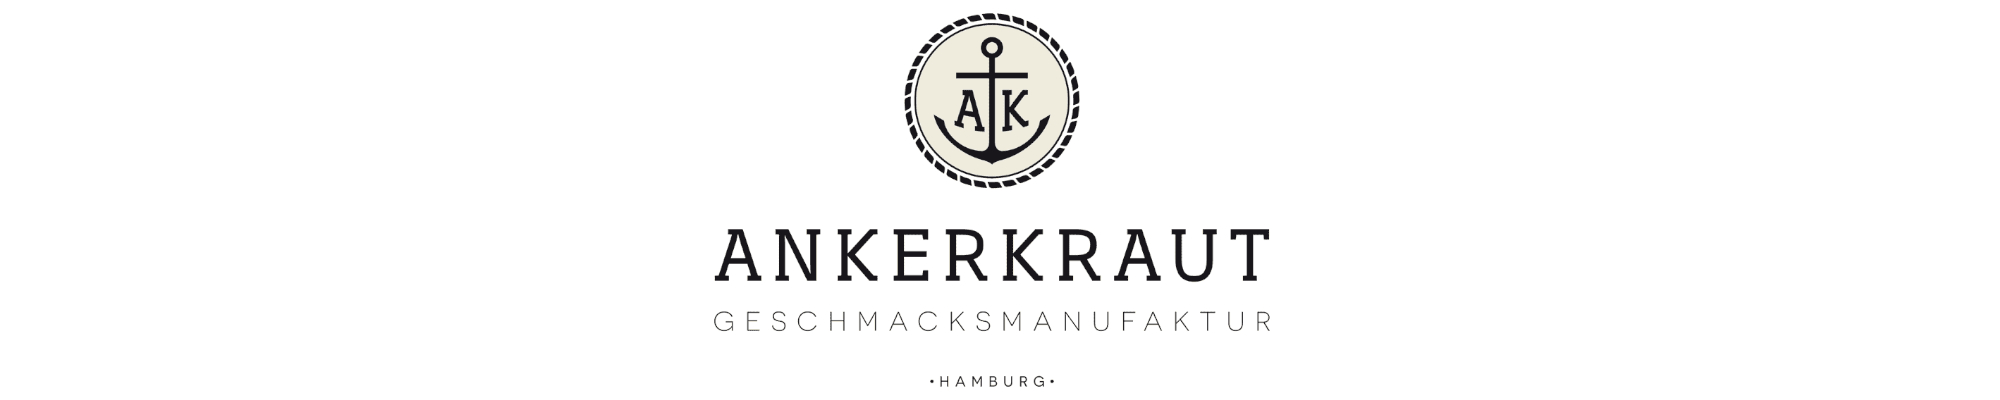 Ankerkraut - Hot Black Salt (Wacken)